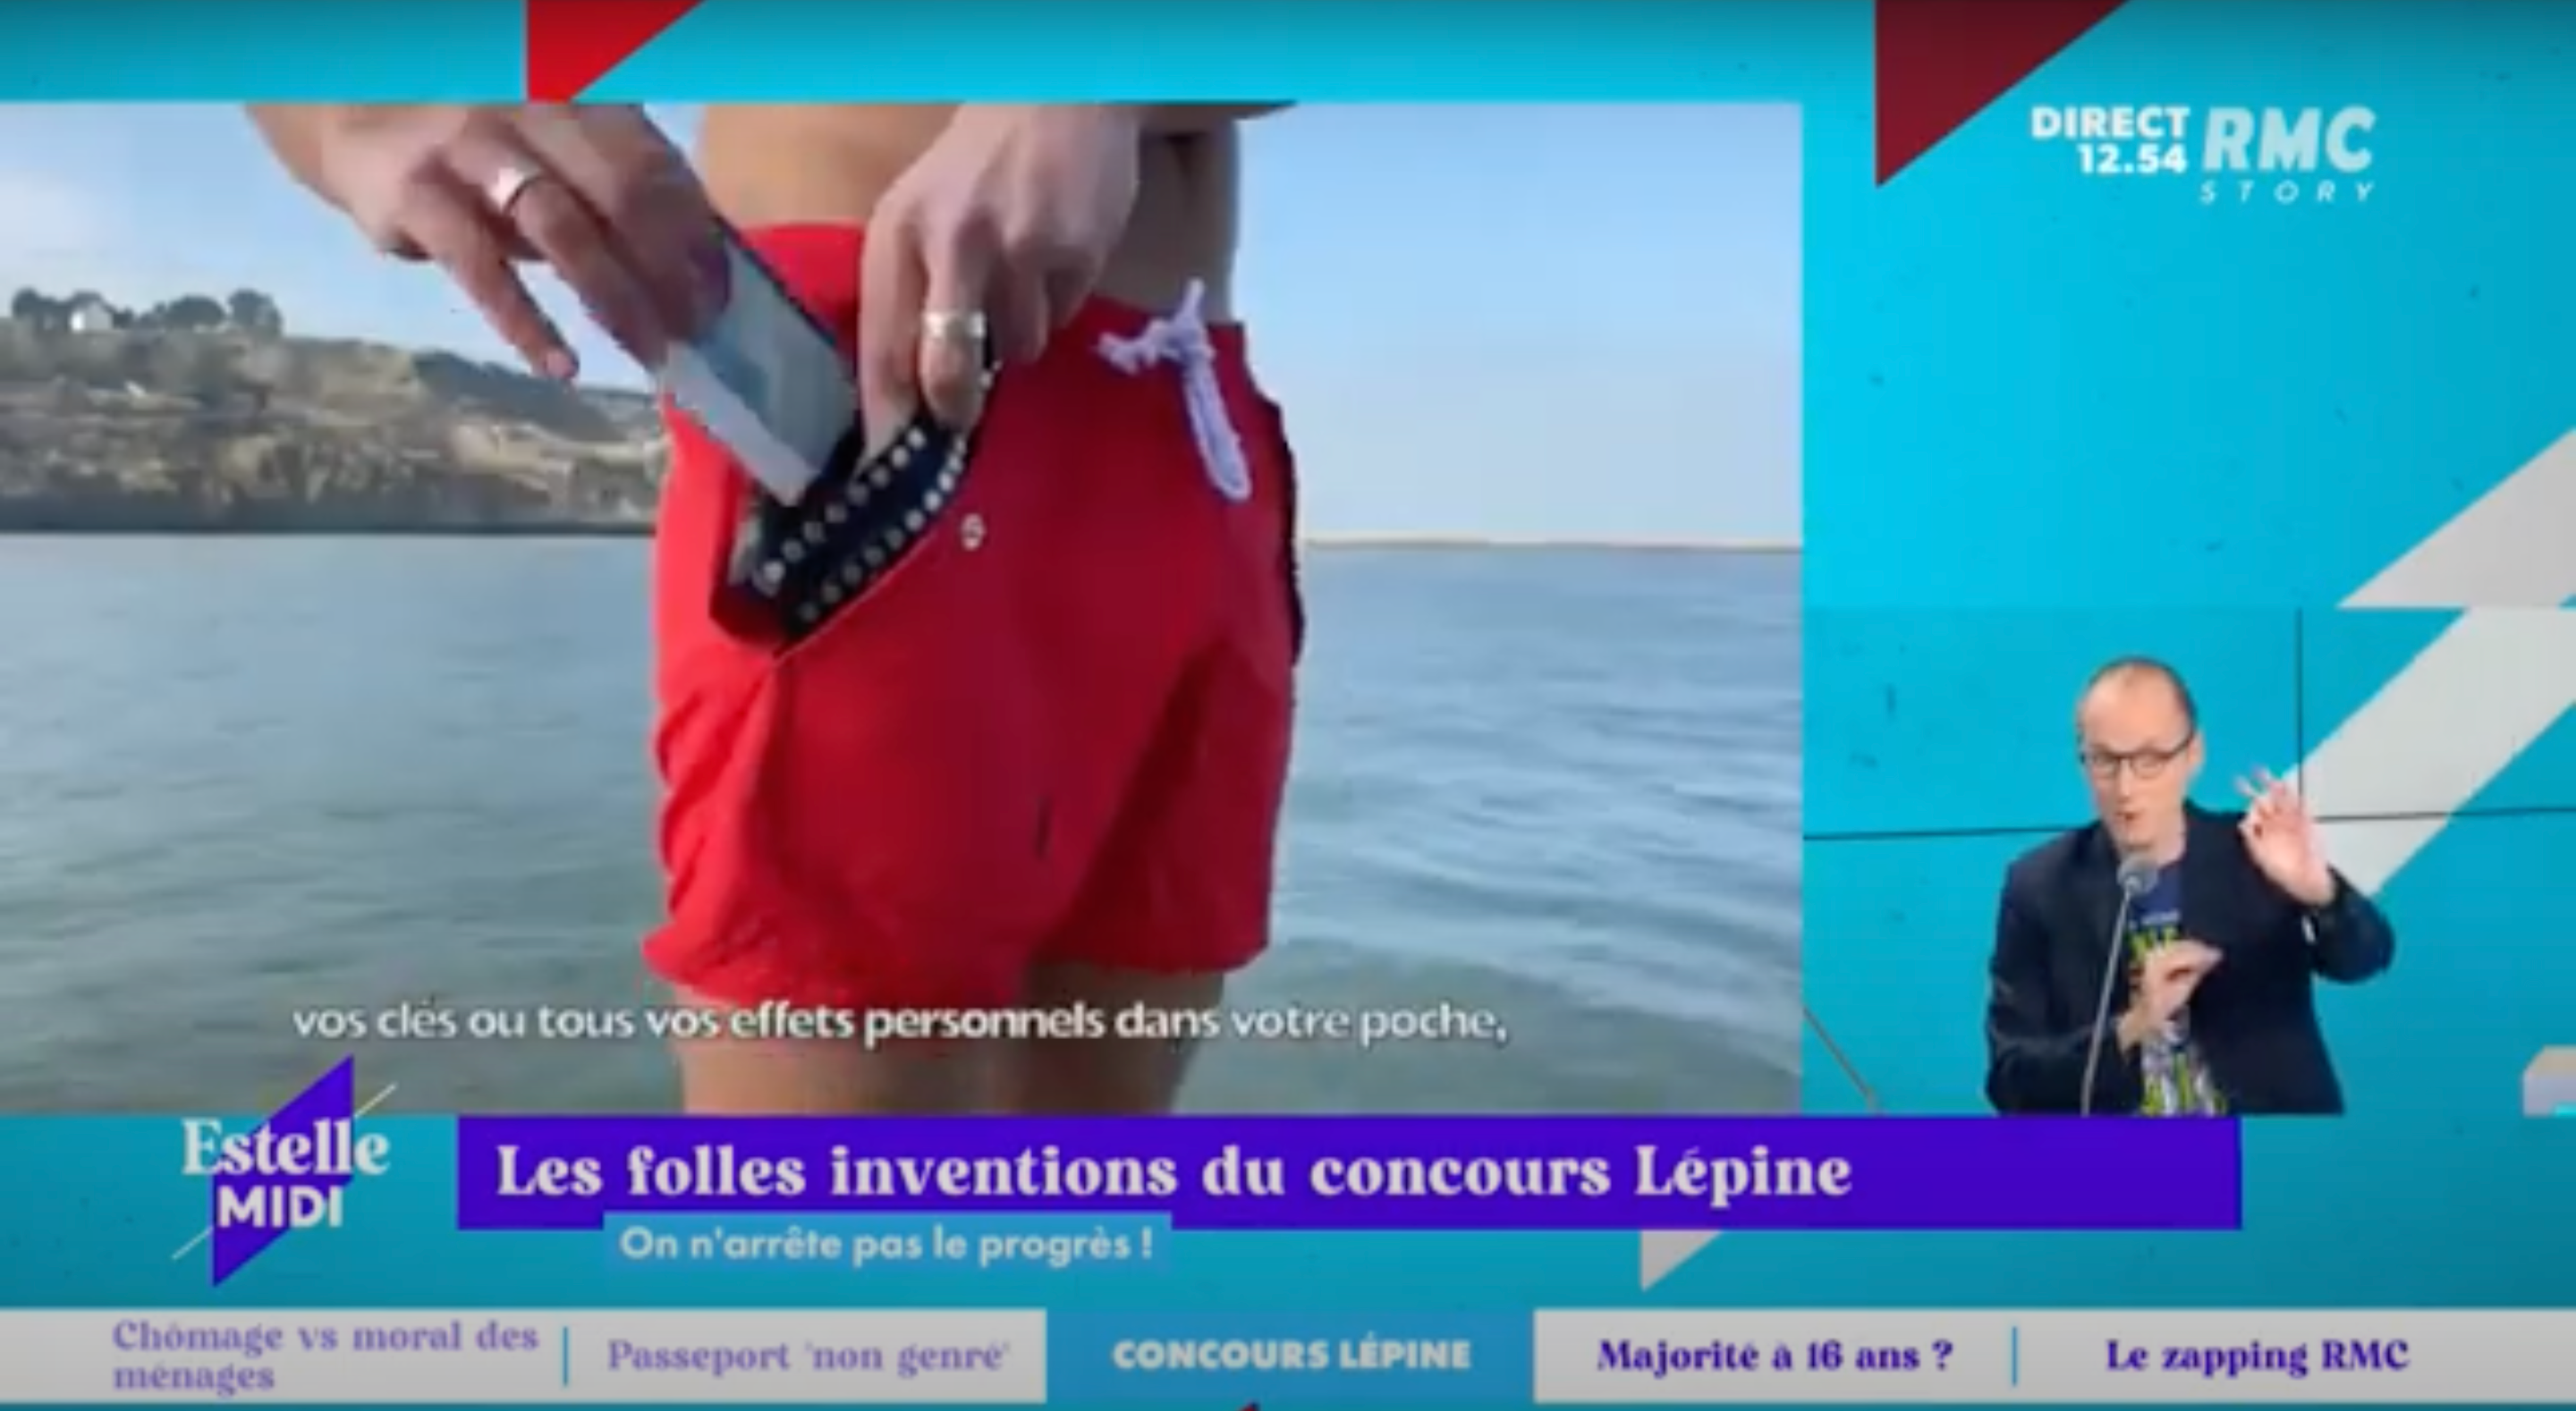 Charger la vidéo : Estelle Midi sur RMC